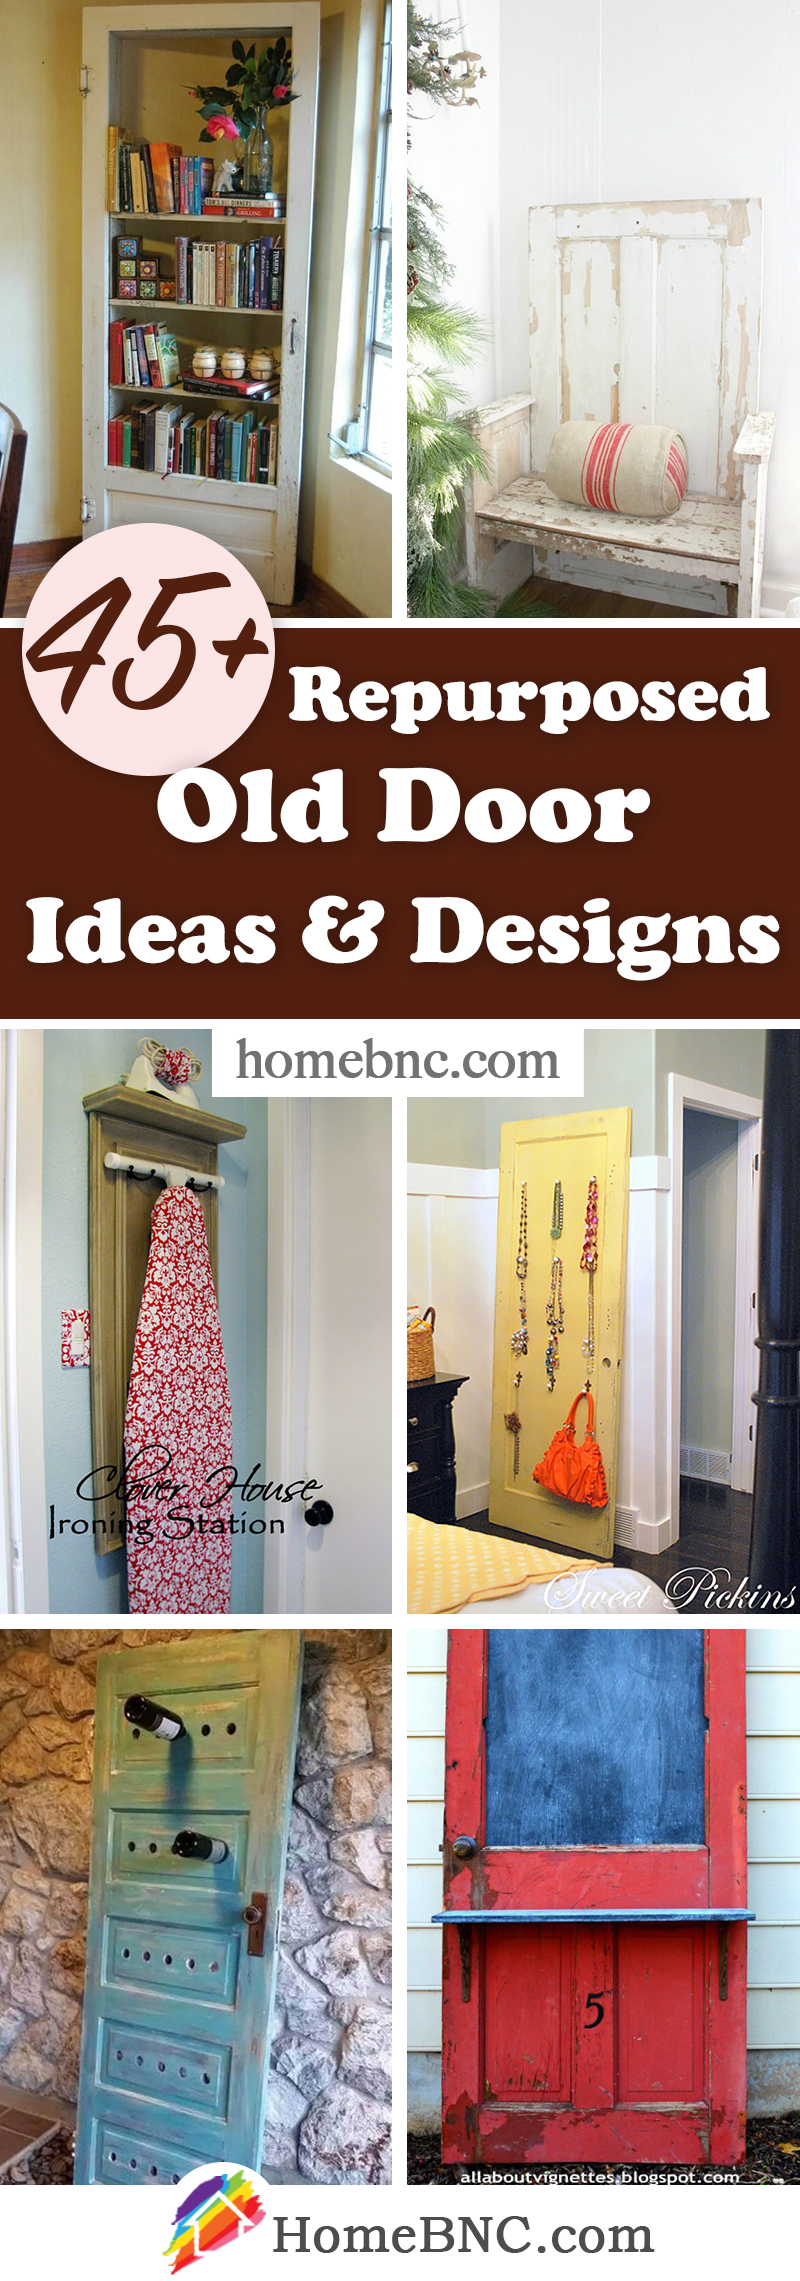 Repurposed Old Door Ideas